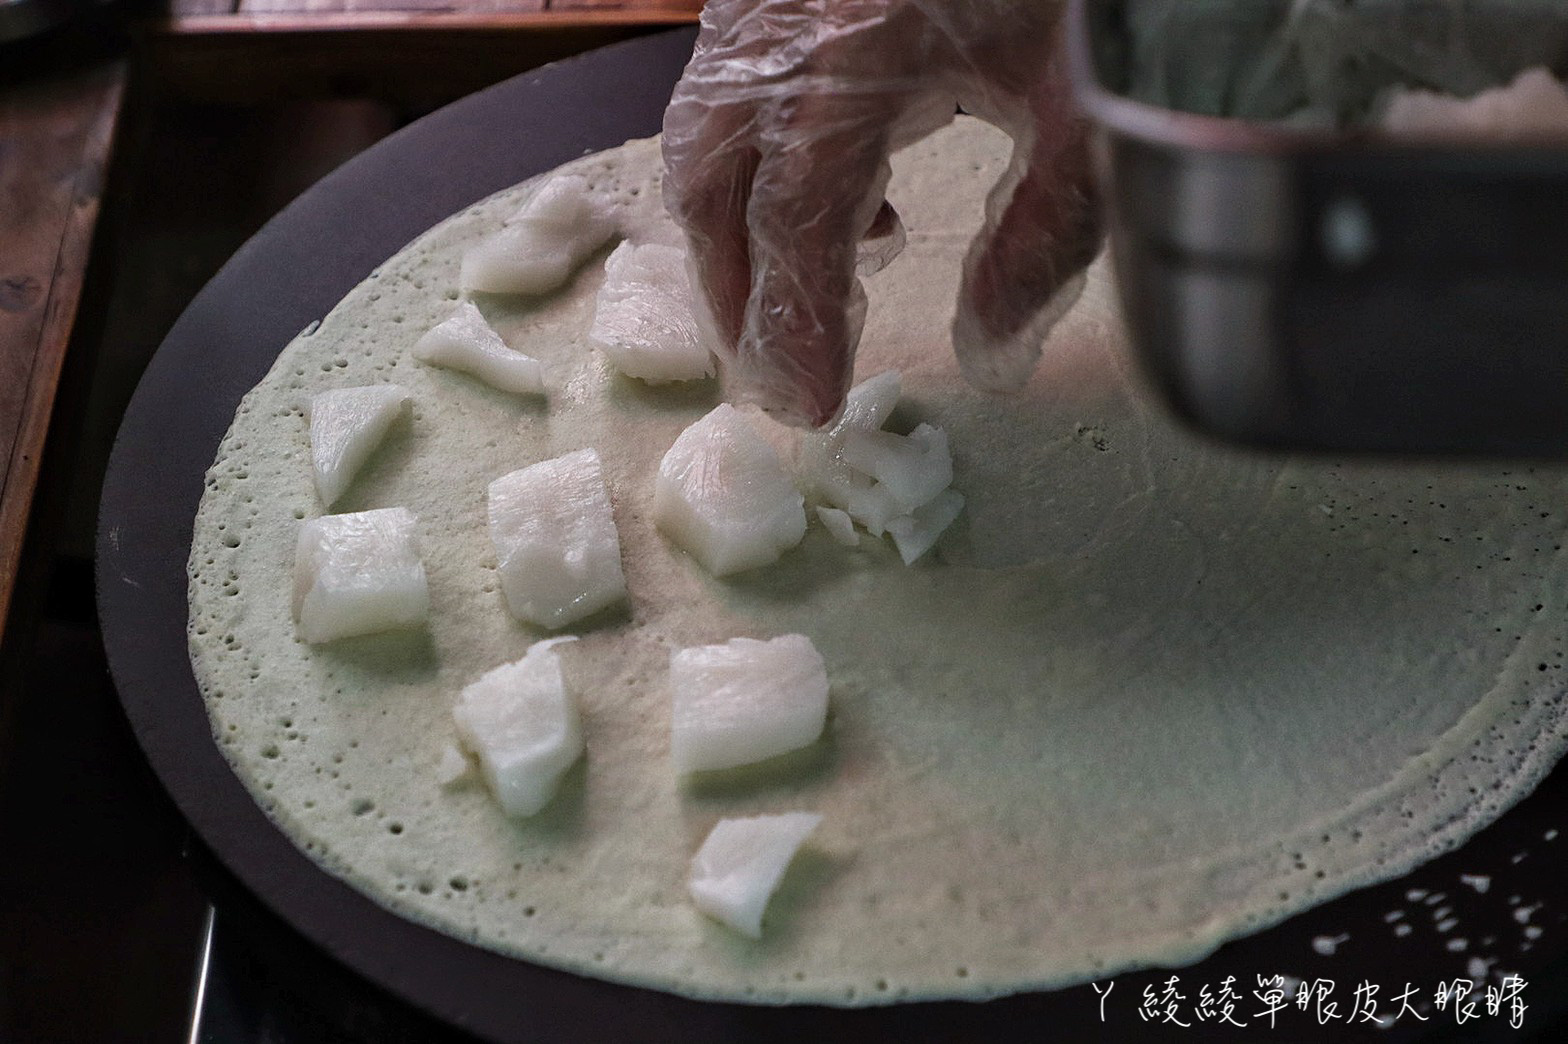 竹北媽媽扶養三兒，自學烘焙賣好吃可麗餅！用料實在、純鮮奶不加一滴水製作